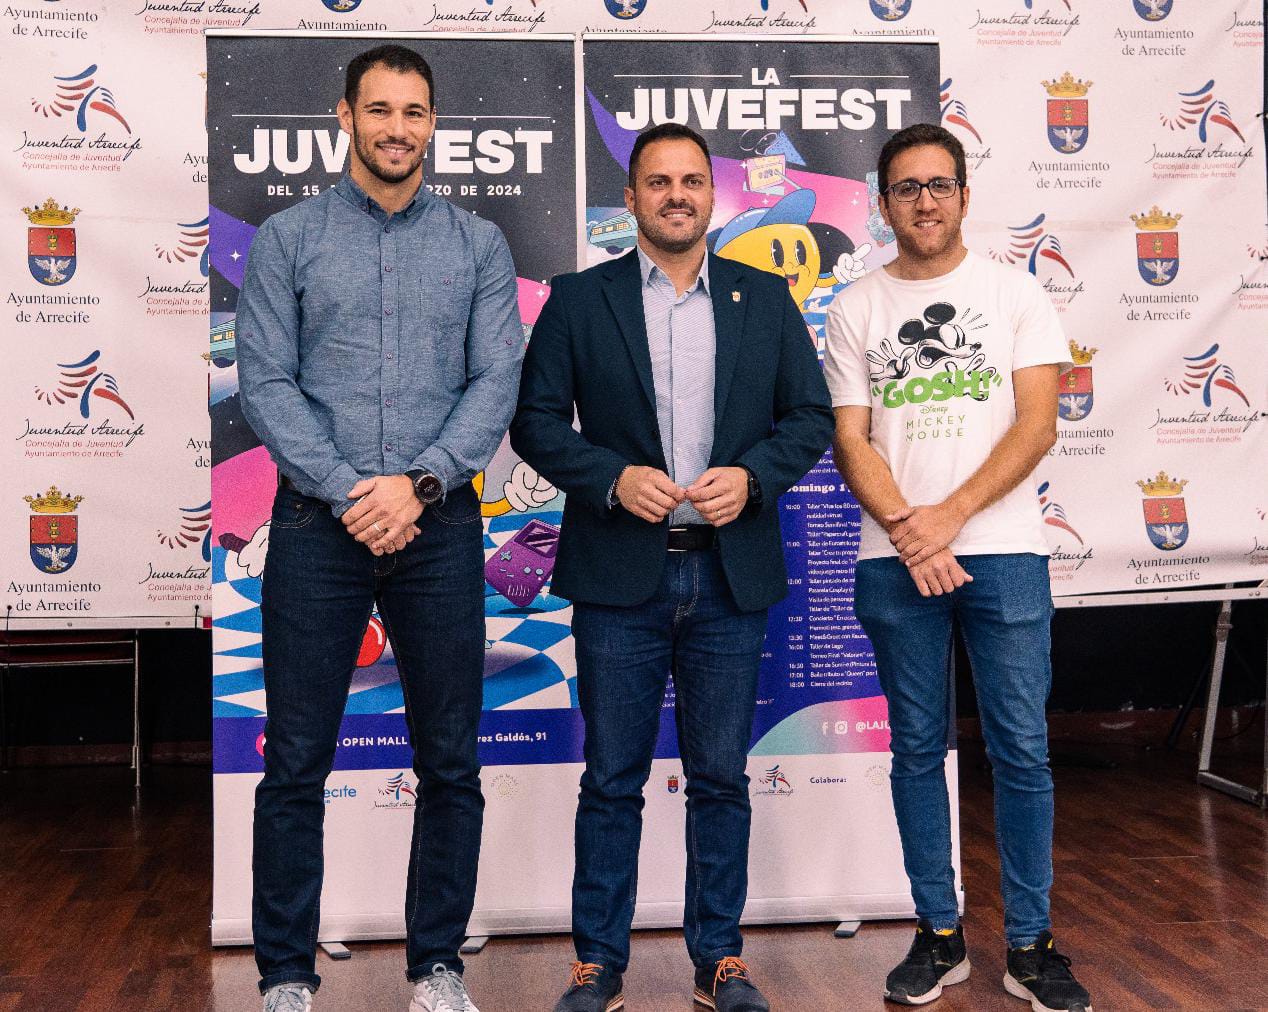 La JuveFest vuelve a Arrecife con un homenaje a los 80